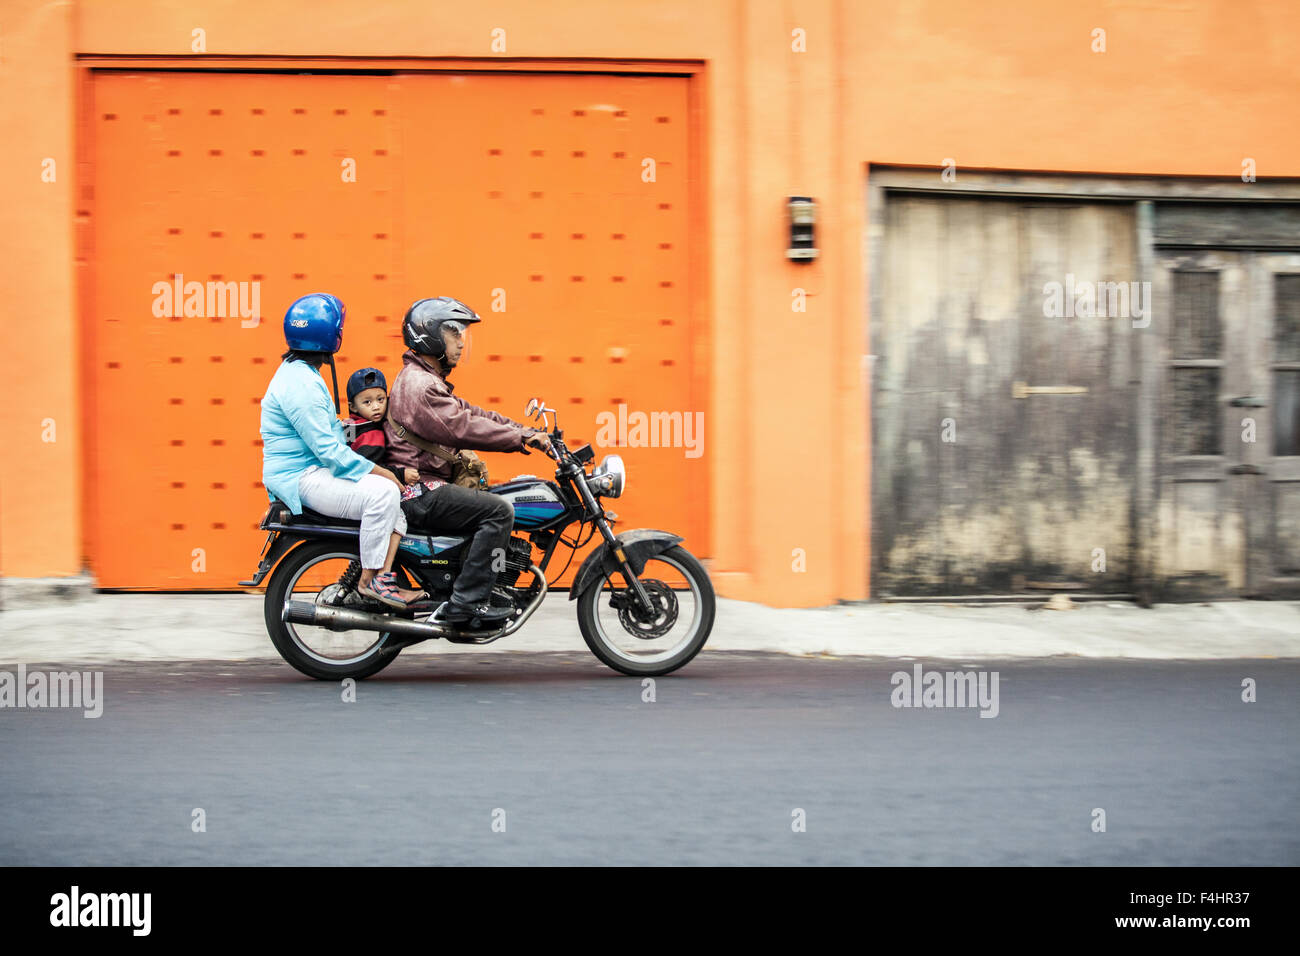 Asian family riding avec enfant looking at camera. Trois personnes sur une moto avec un mur orange règles asiatique mode de transport Banque D'Images